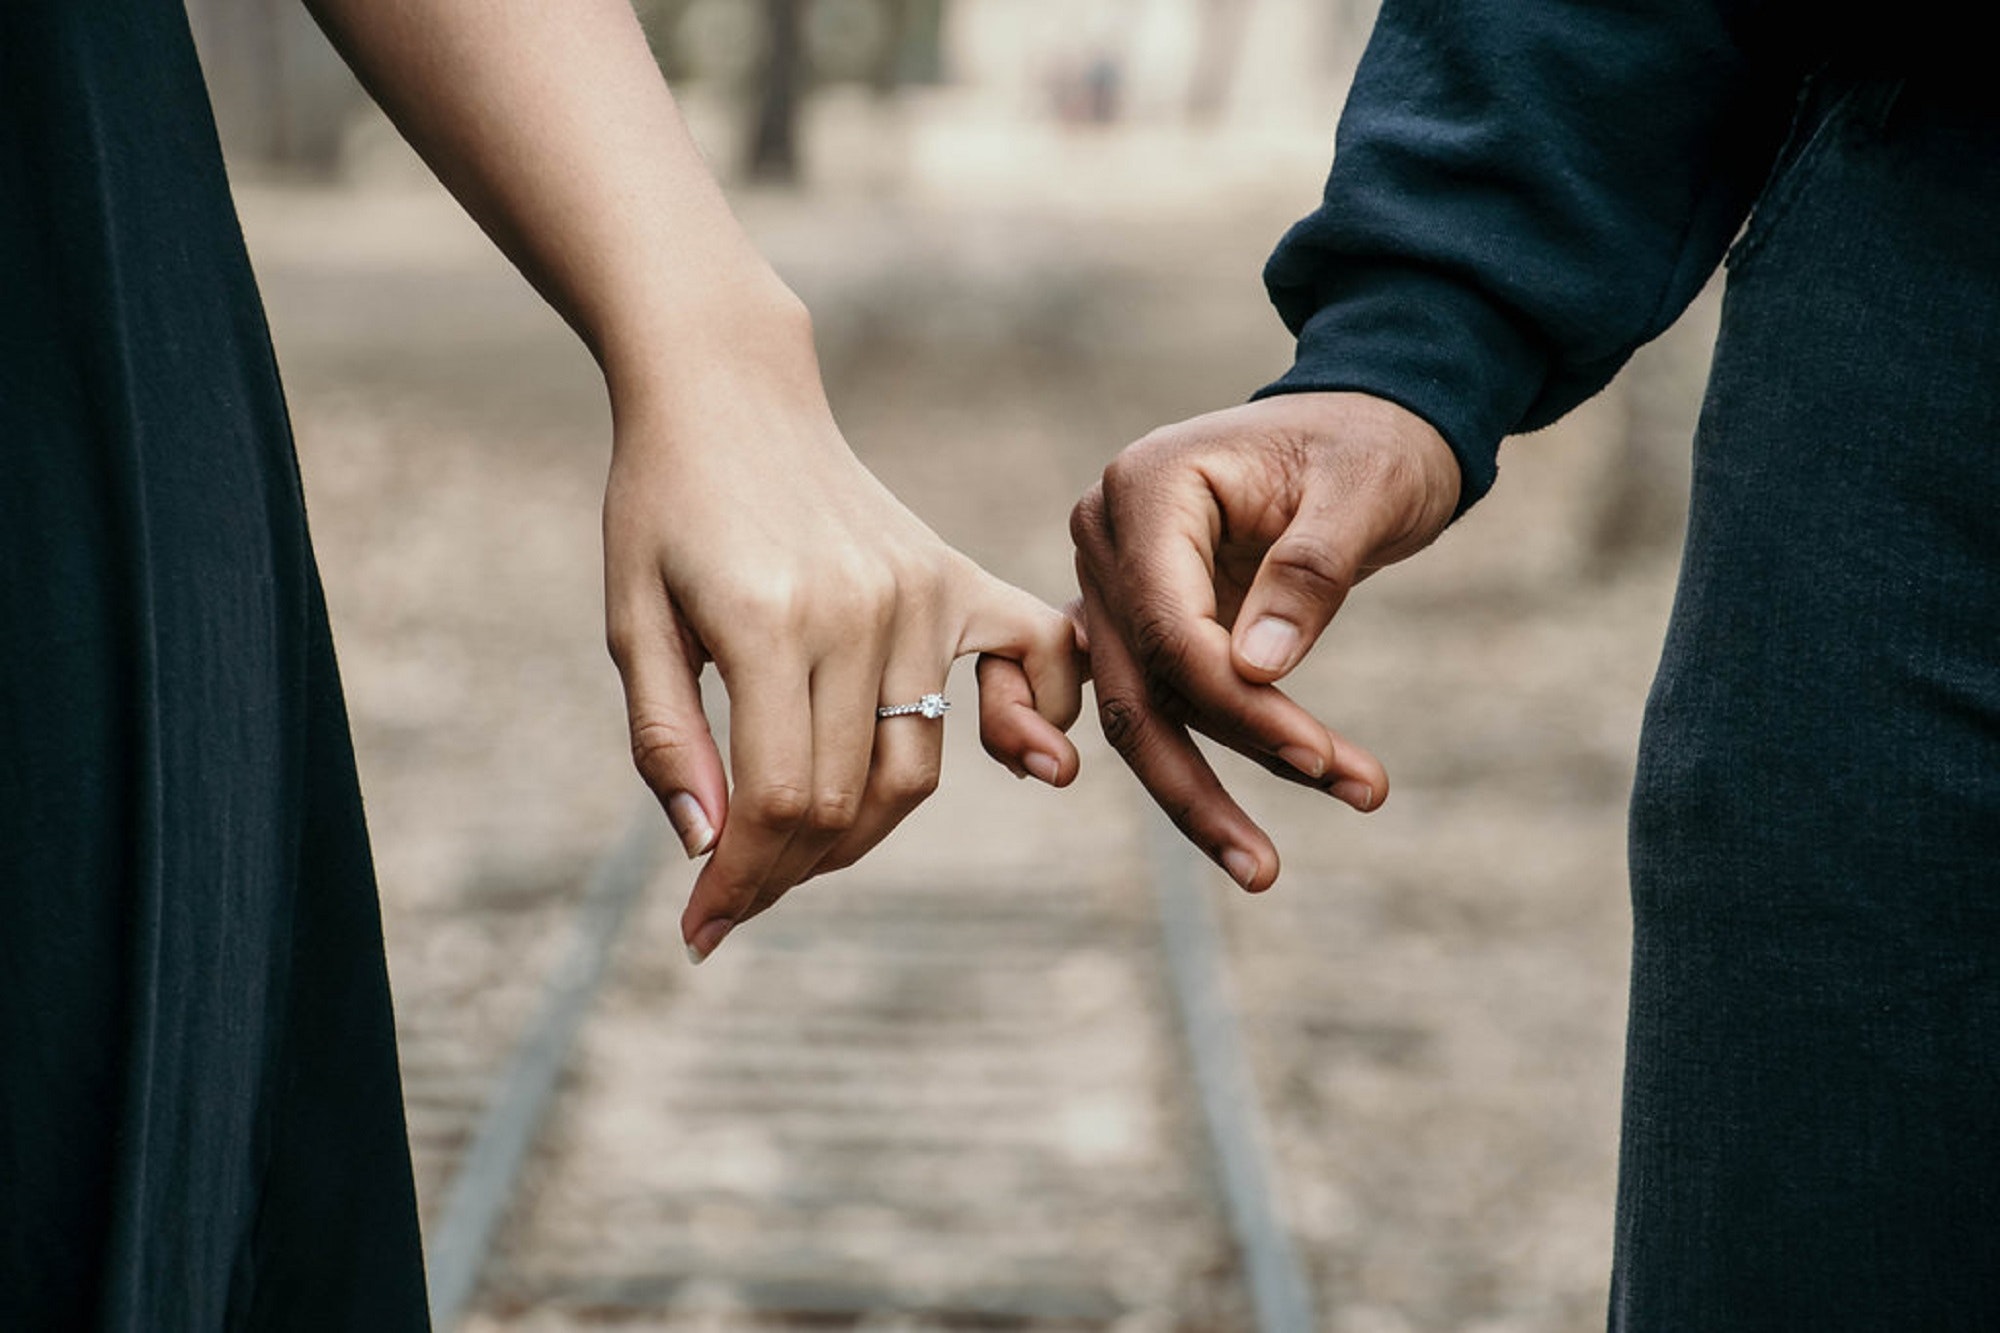 El acta de concubinato establece derechos y obligaciones al vivir en pareja | Foto: Pexels